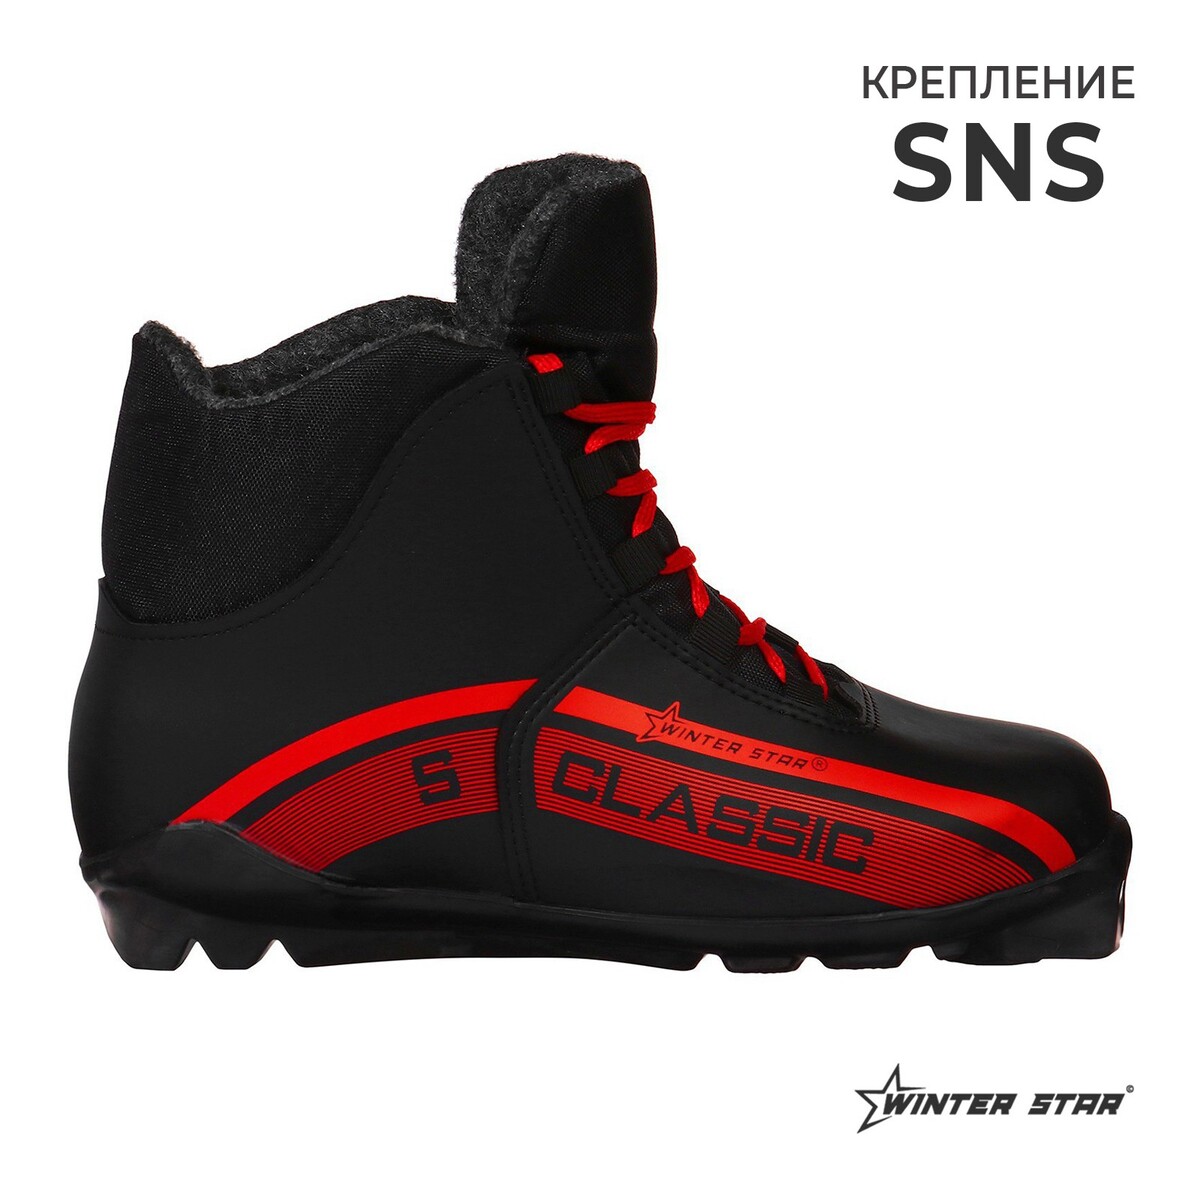 Ботинки лыжные winter star classic, sns, р. 46, цвет черный/красный